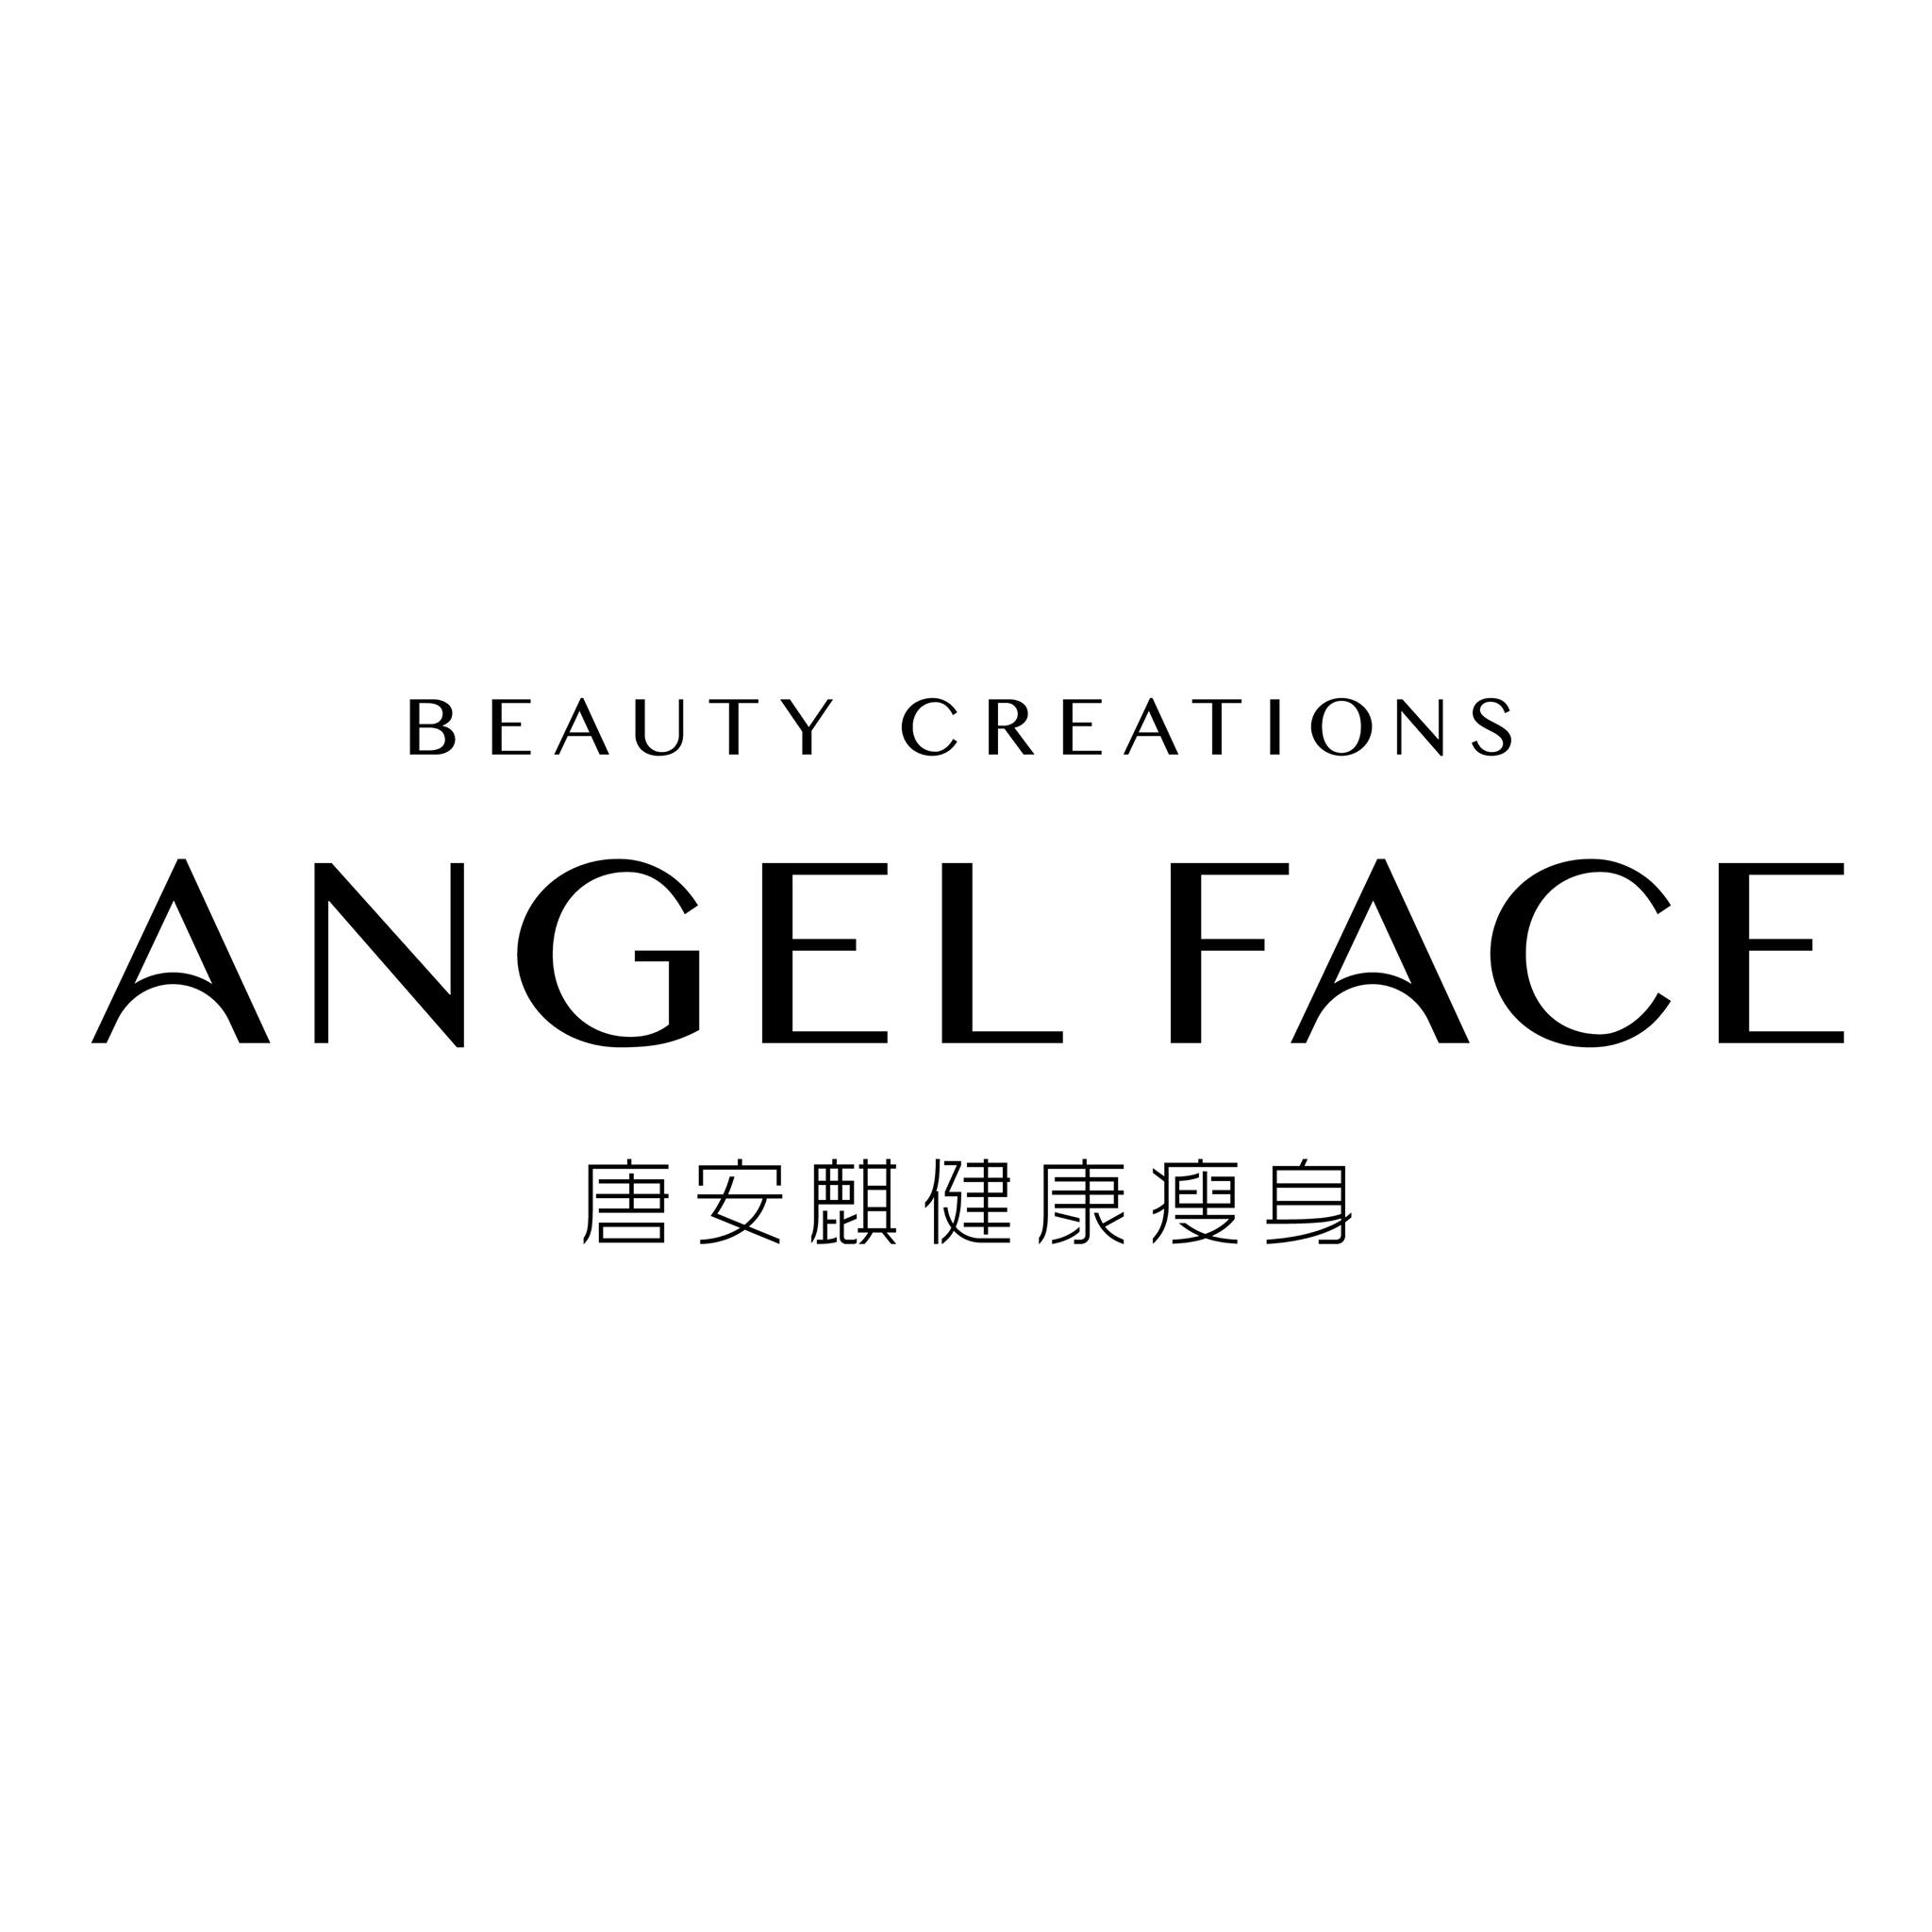 纖體瘦身: Angel Face 唐安麒美顏瘦身專門店 (九龍灣店)